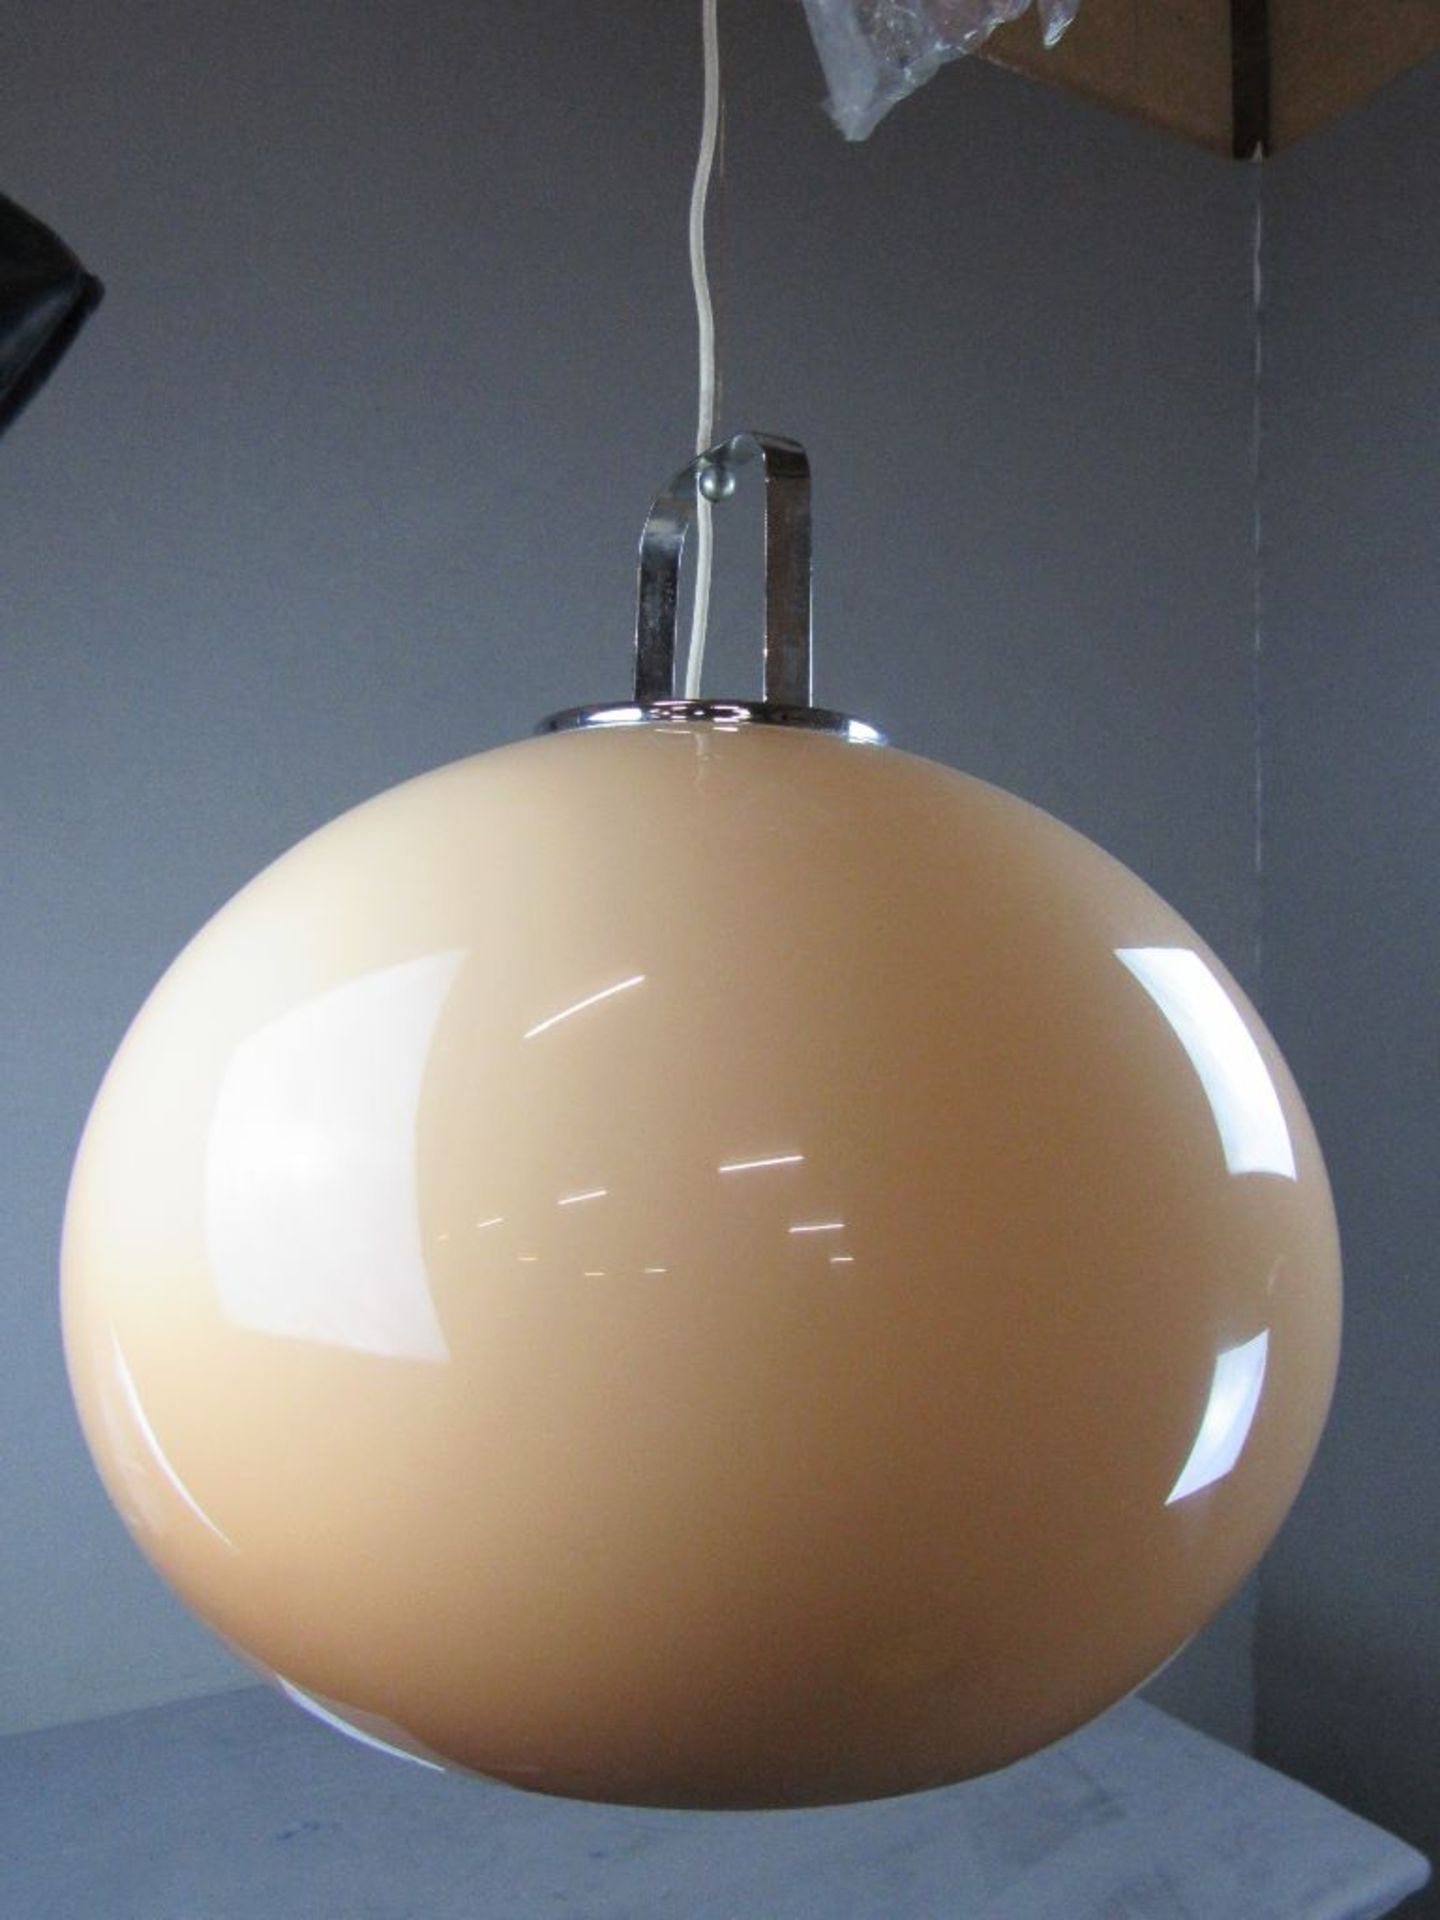 Space Age 70er Jahre Designer Deckenlampe Durchmesser ca.50cm funktionstüchtig- - -20.00 % buyer's